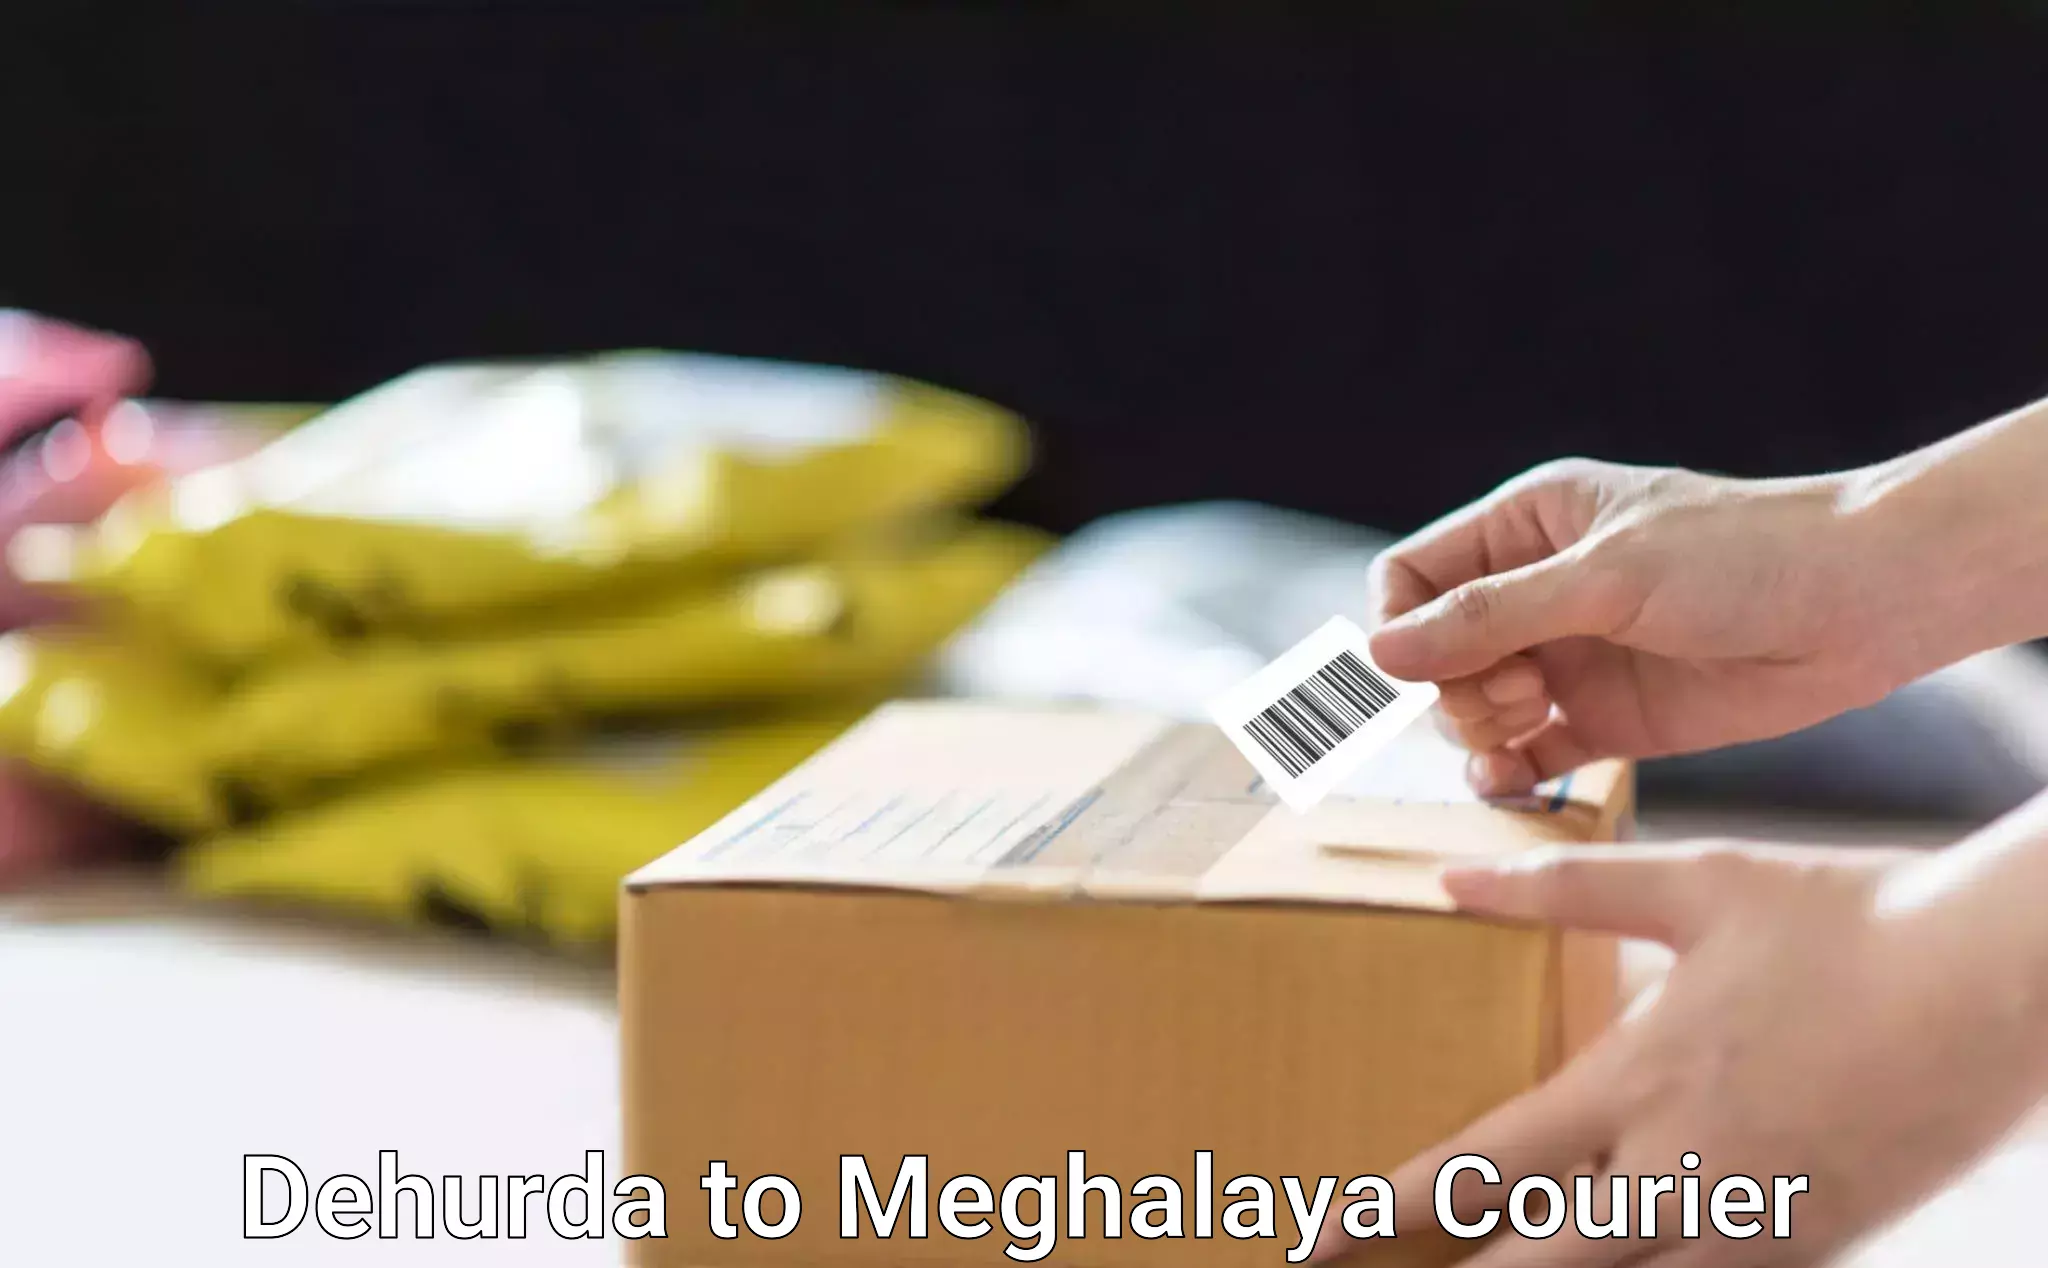 Quick booking process in Dehurda to Meghalaya